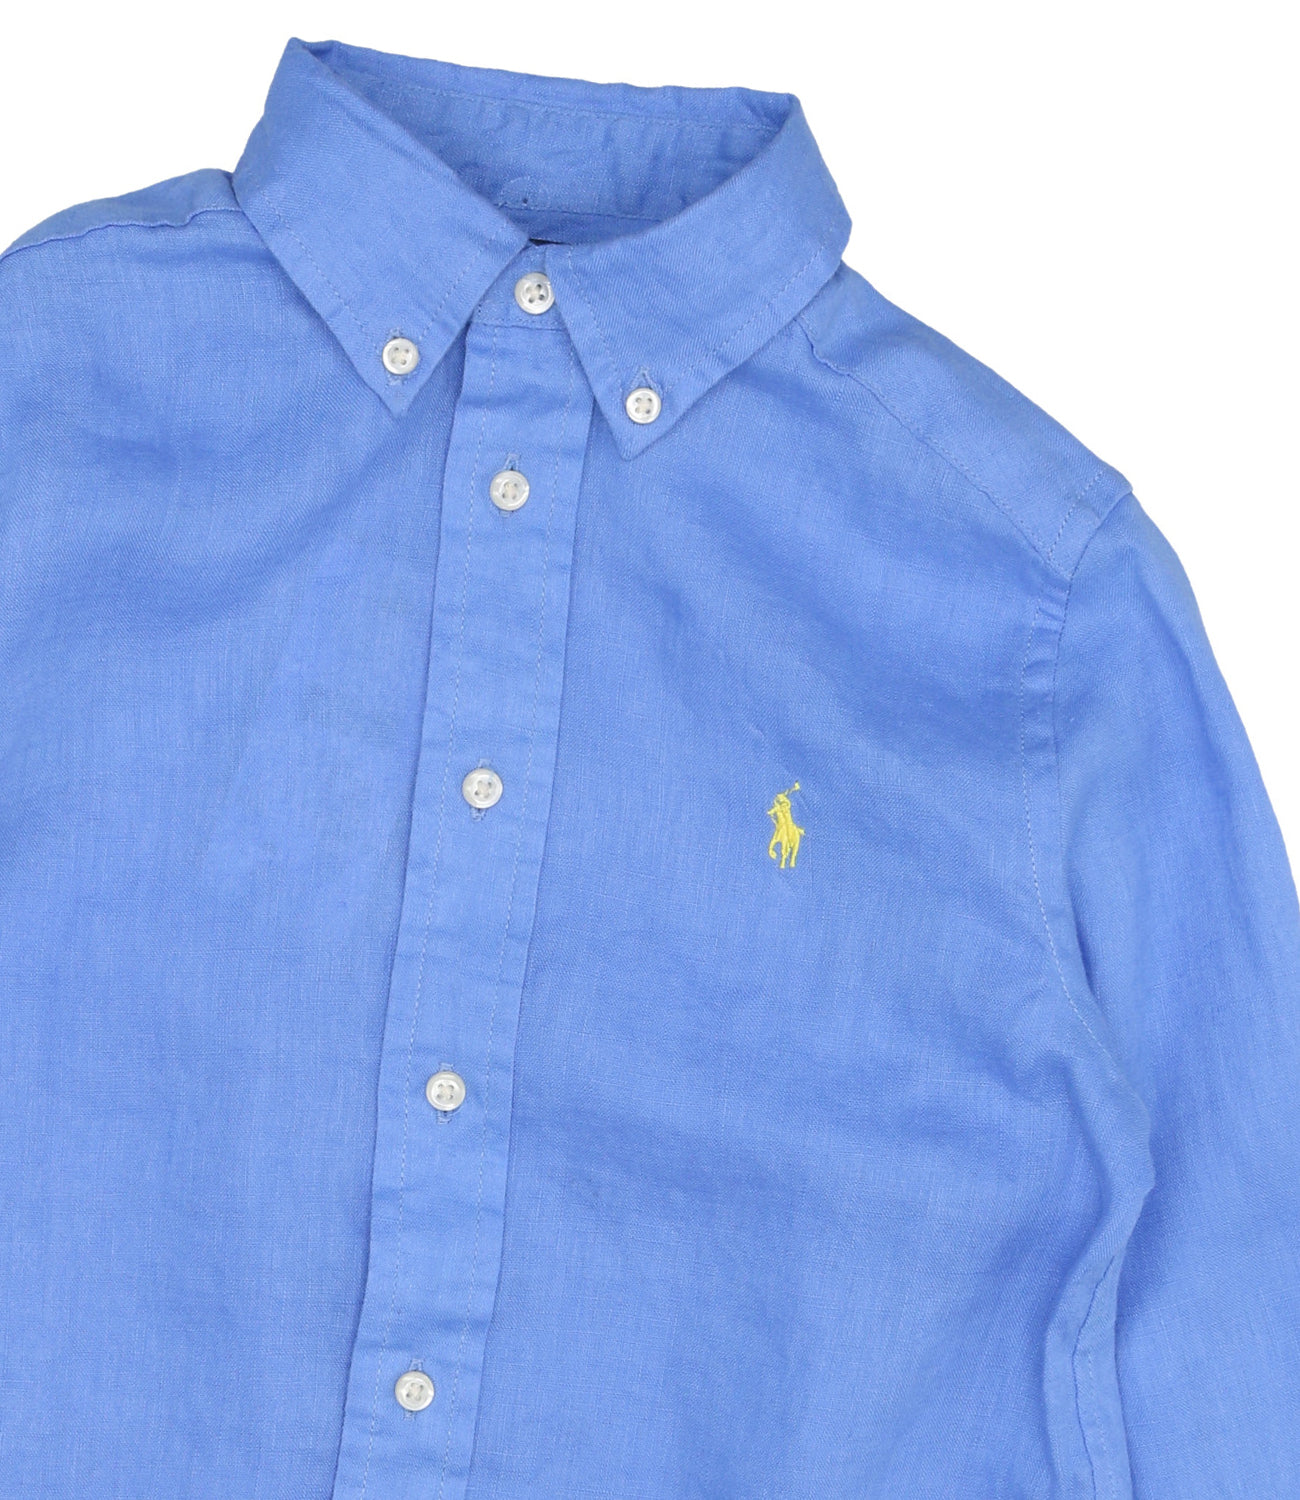 Ralph Lauren Childrenswear | Light Blue Shirt